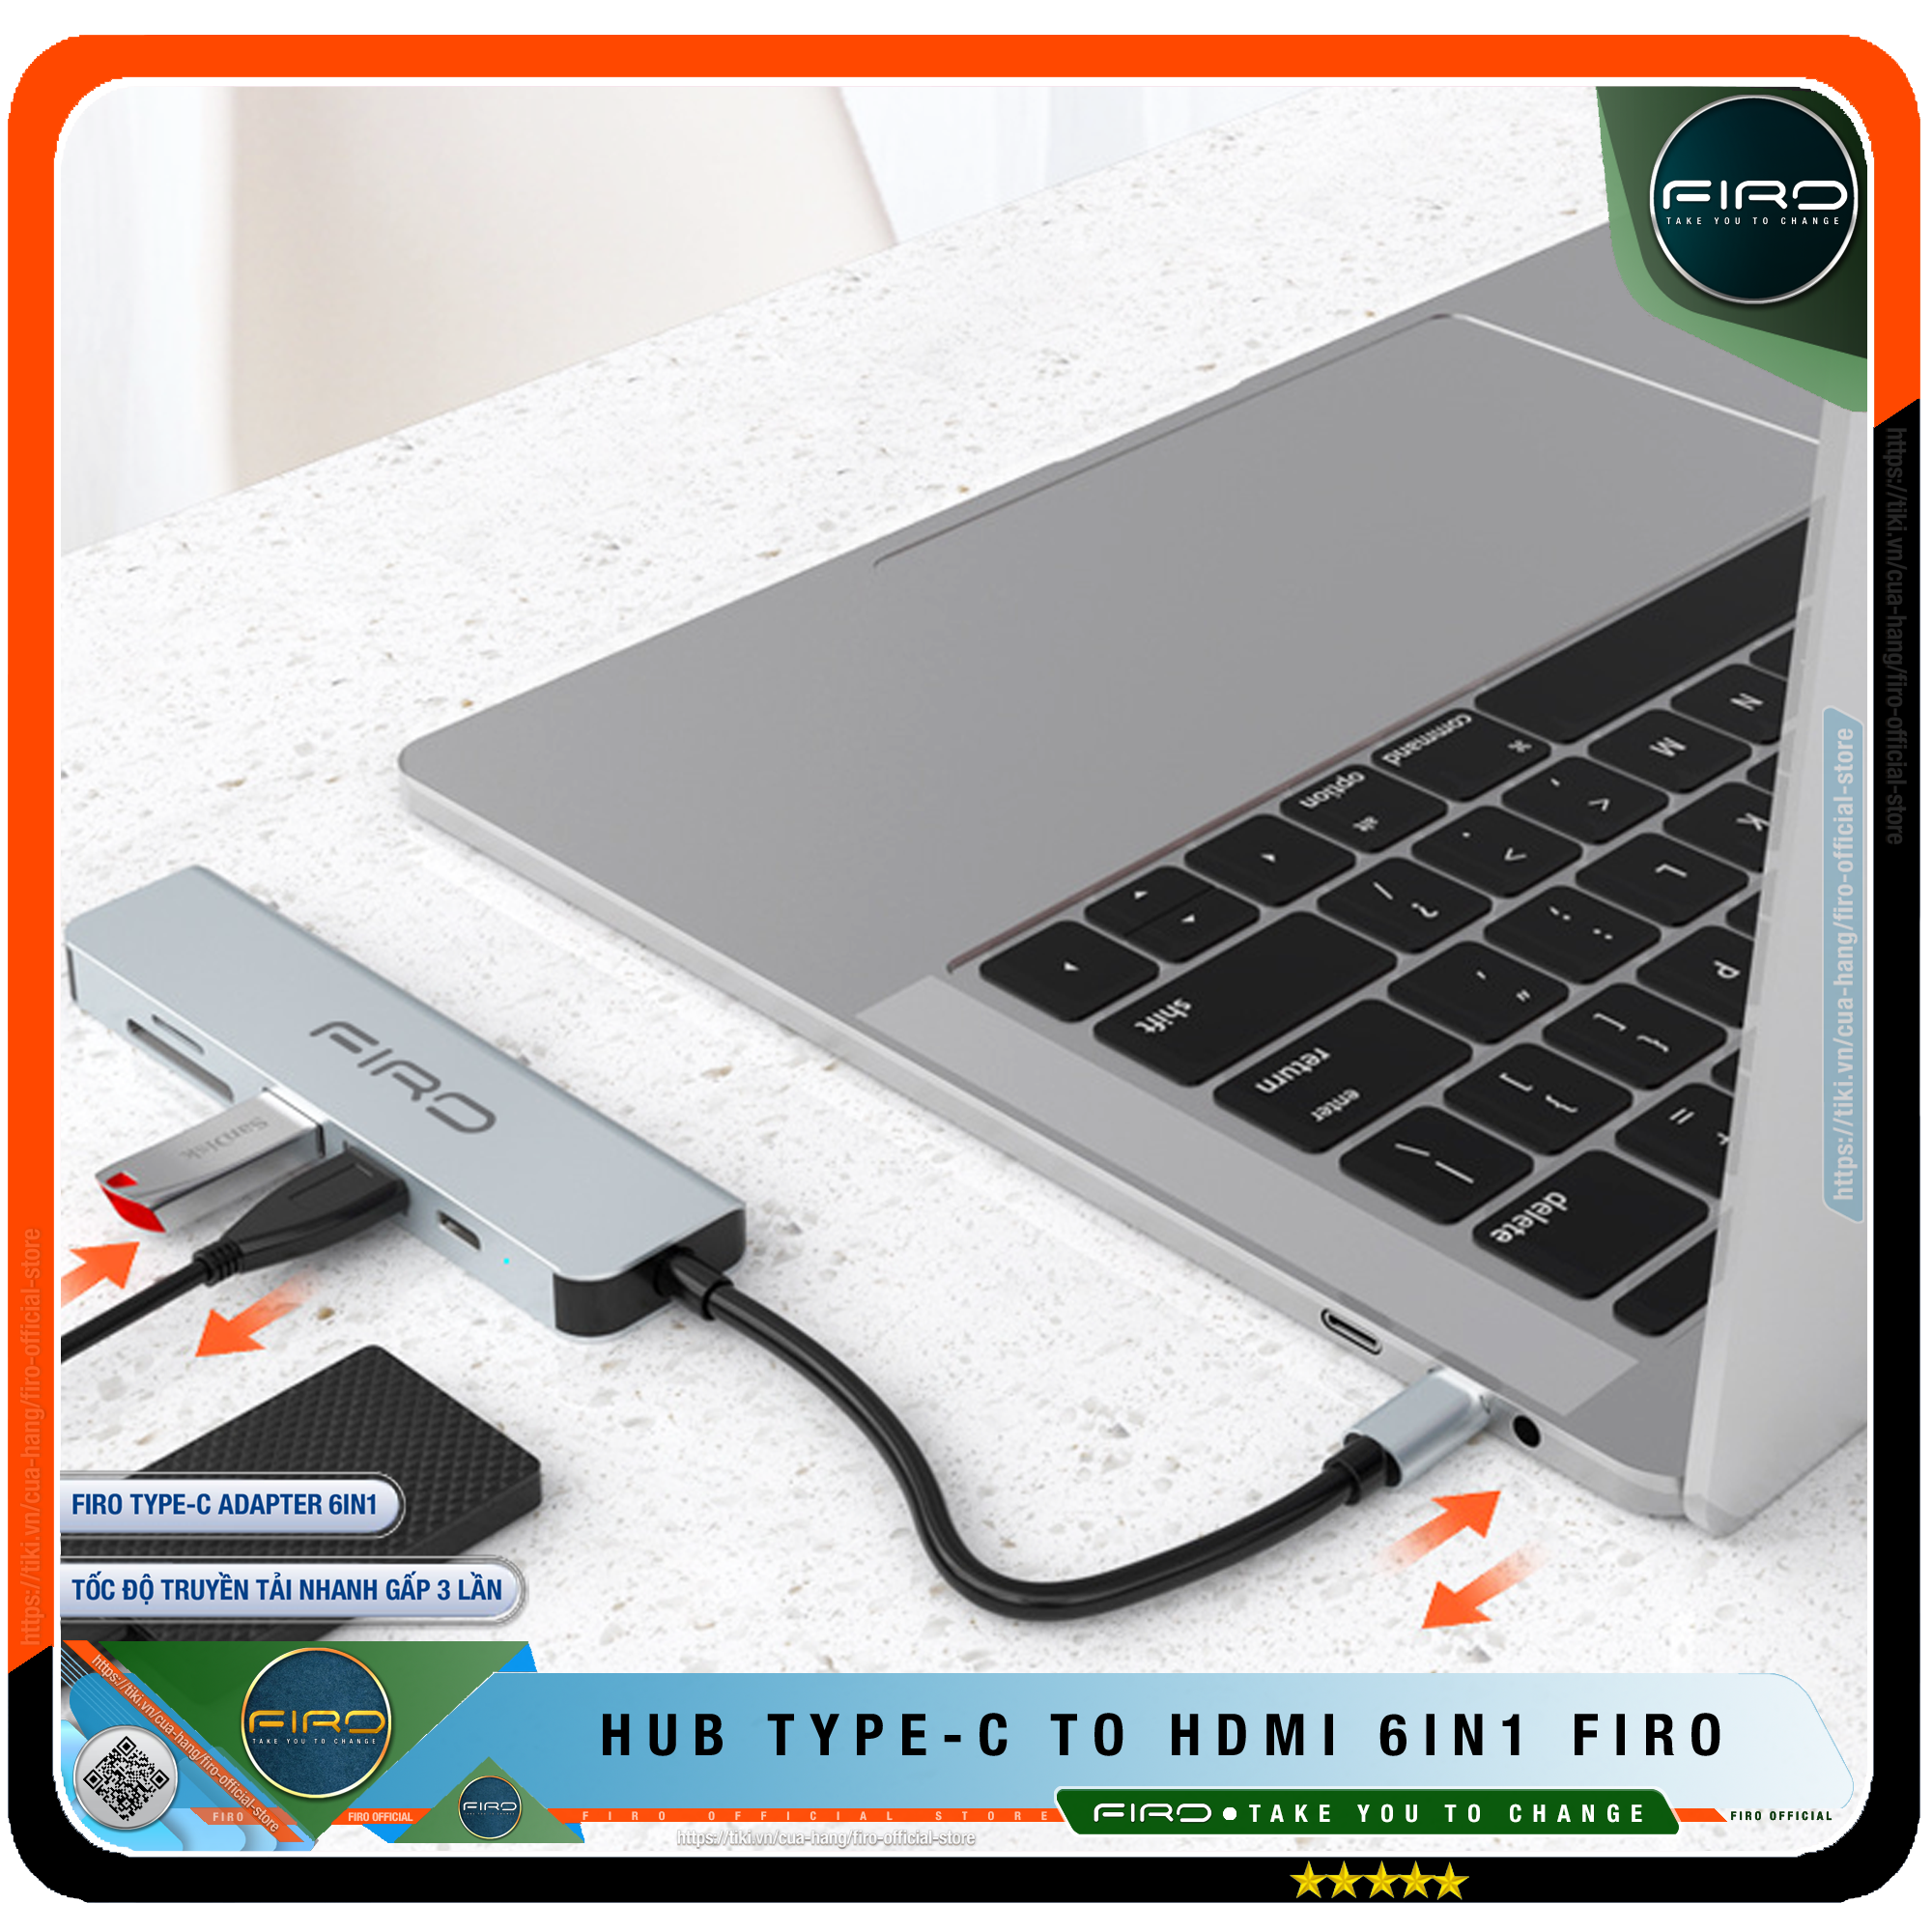 Hub USB Type-C To HDMI FIRO 6in1 Chuẩn HDTV - Hub Chuyển Đổi Type-C Chia 6 Cổng - 1 Cổng HDMI/HDTV 4K, 2 Cổng USB 3.0, 2 Khe Đọc Thẻ TF Và SD, 1 Cổng Sạc Nhanh Type C PD - Kết Nối Tốc Độ Cao - Hub USB FIRO – Hàng Chính Hãng